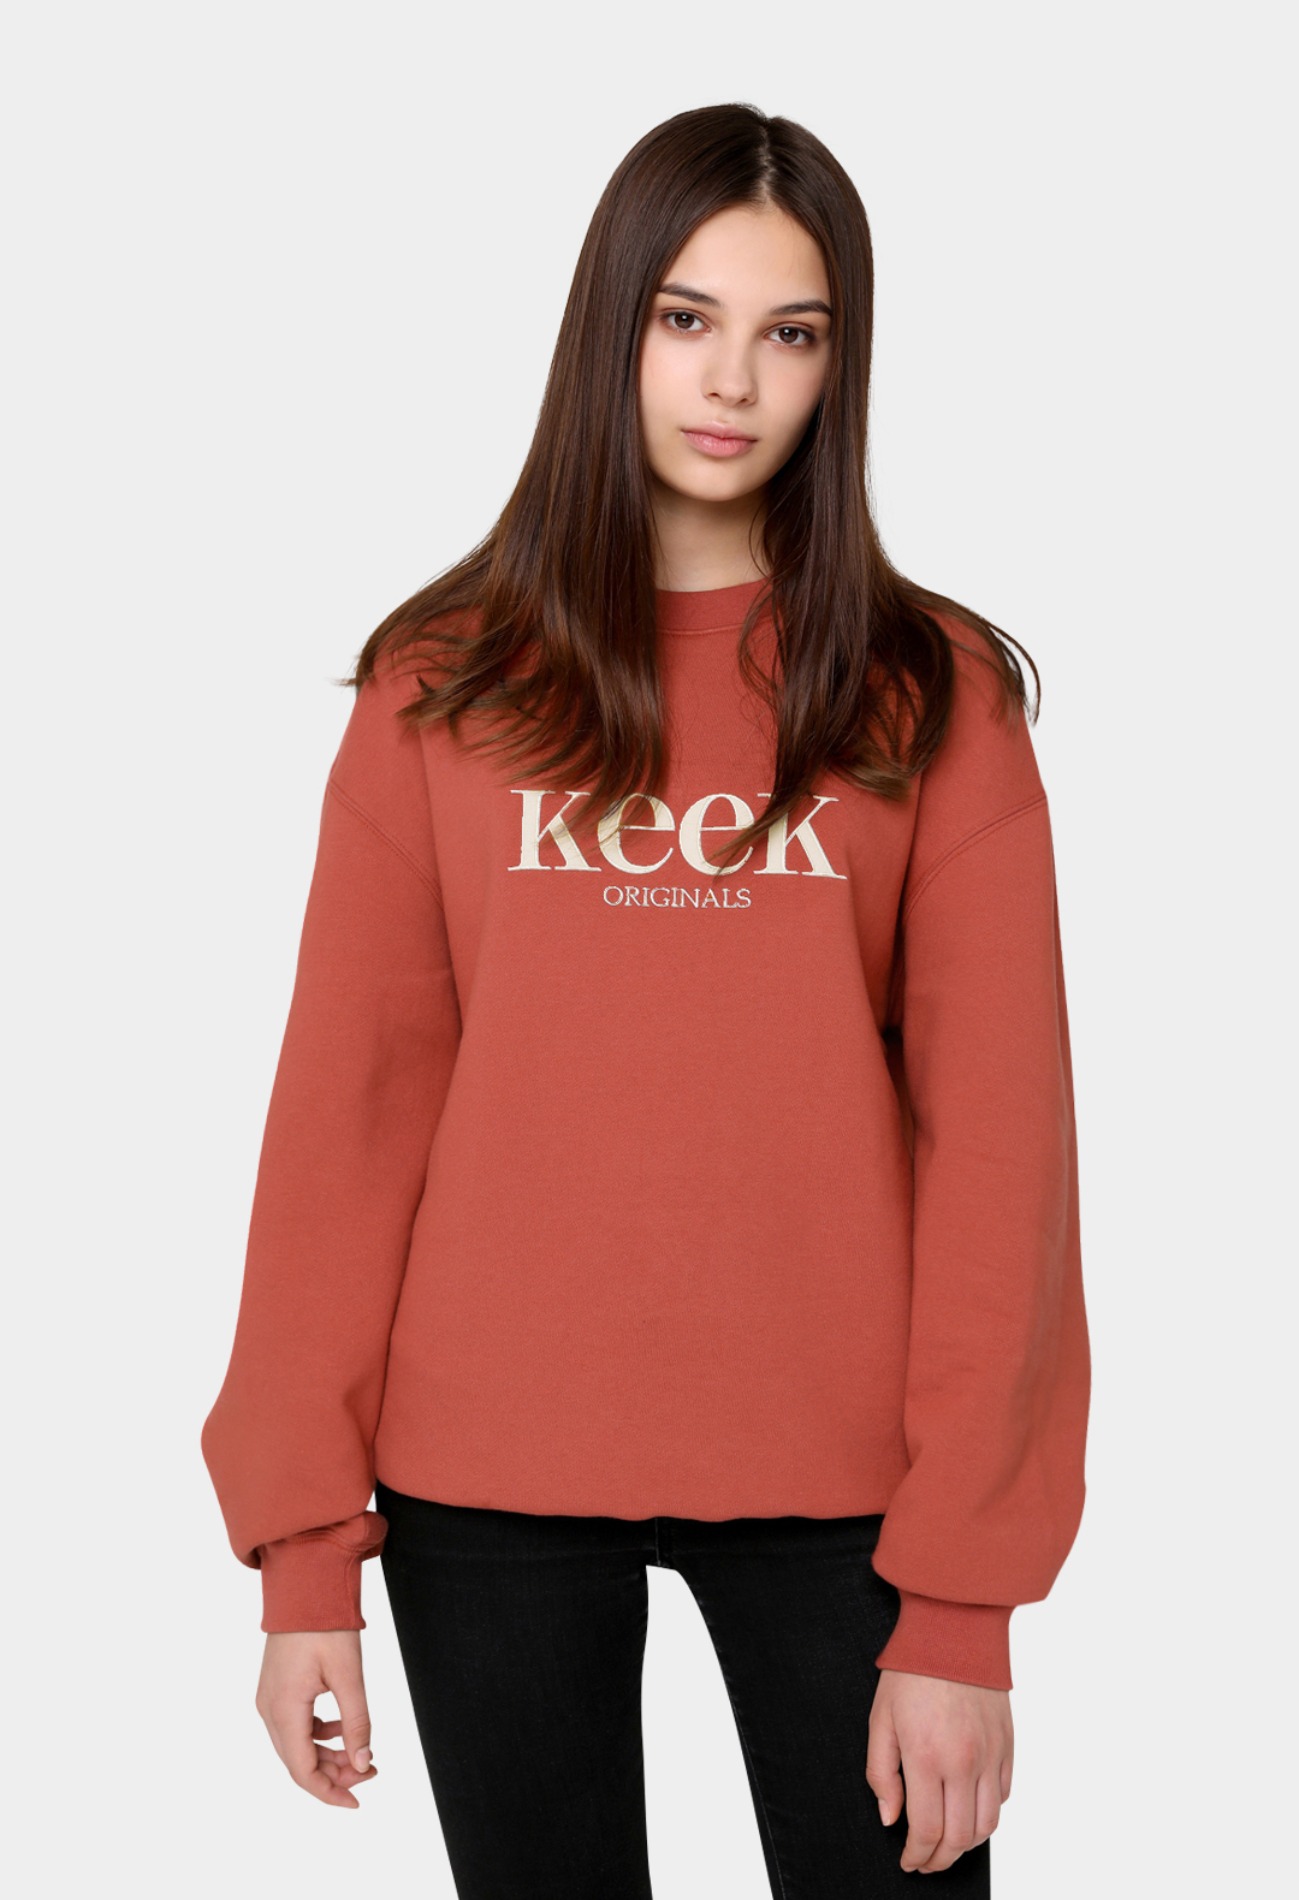 keek [Unisex] keek Original Sweatshirts - Brick 스트릿패션 유니섹스브랜드 커플시밀러룩 남자쇼핑몰 여성의류쇼핑몰 후드티 힙색